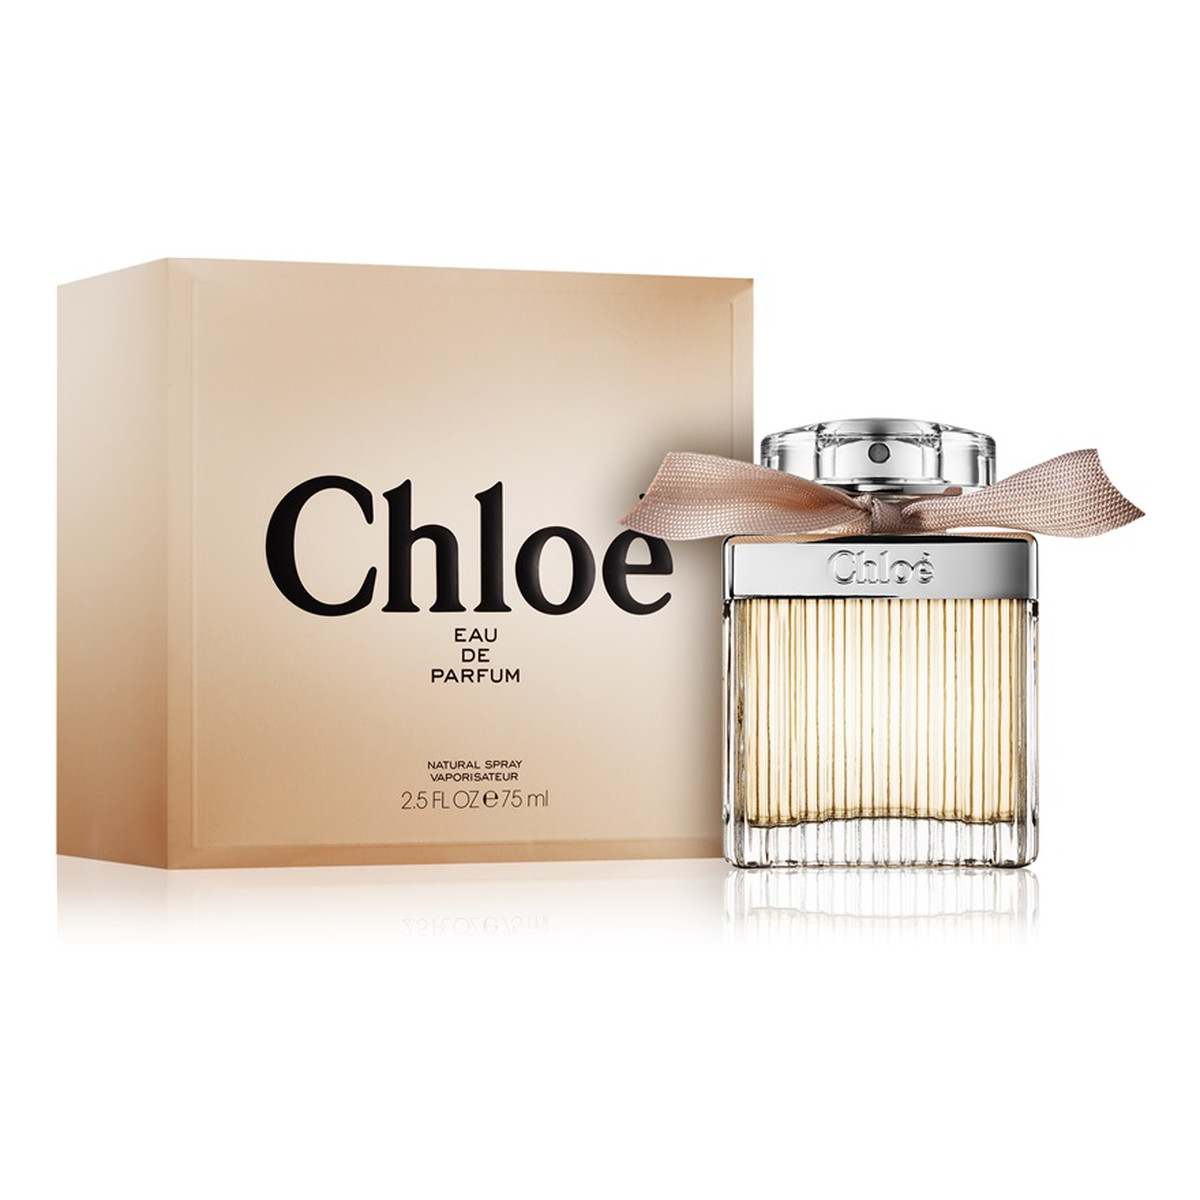 Chloe Chloé woda perfumowana dla kobiet 75ml